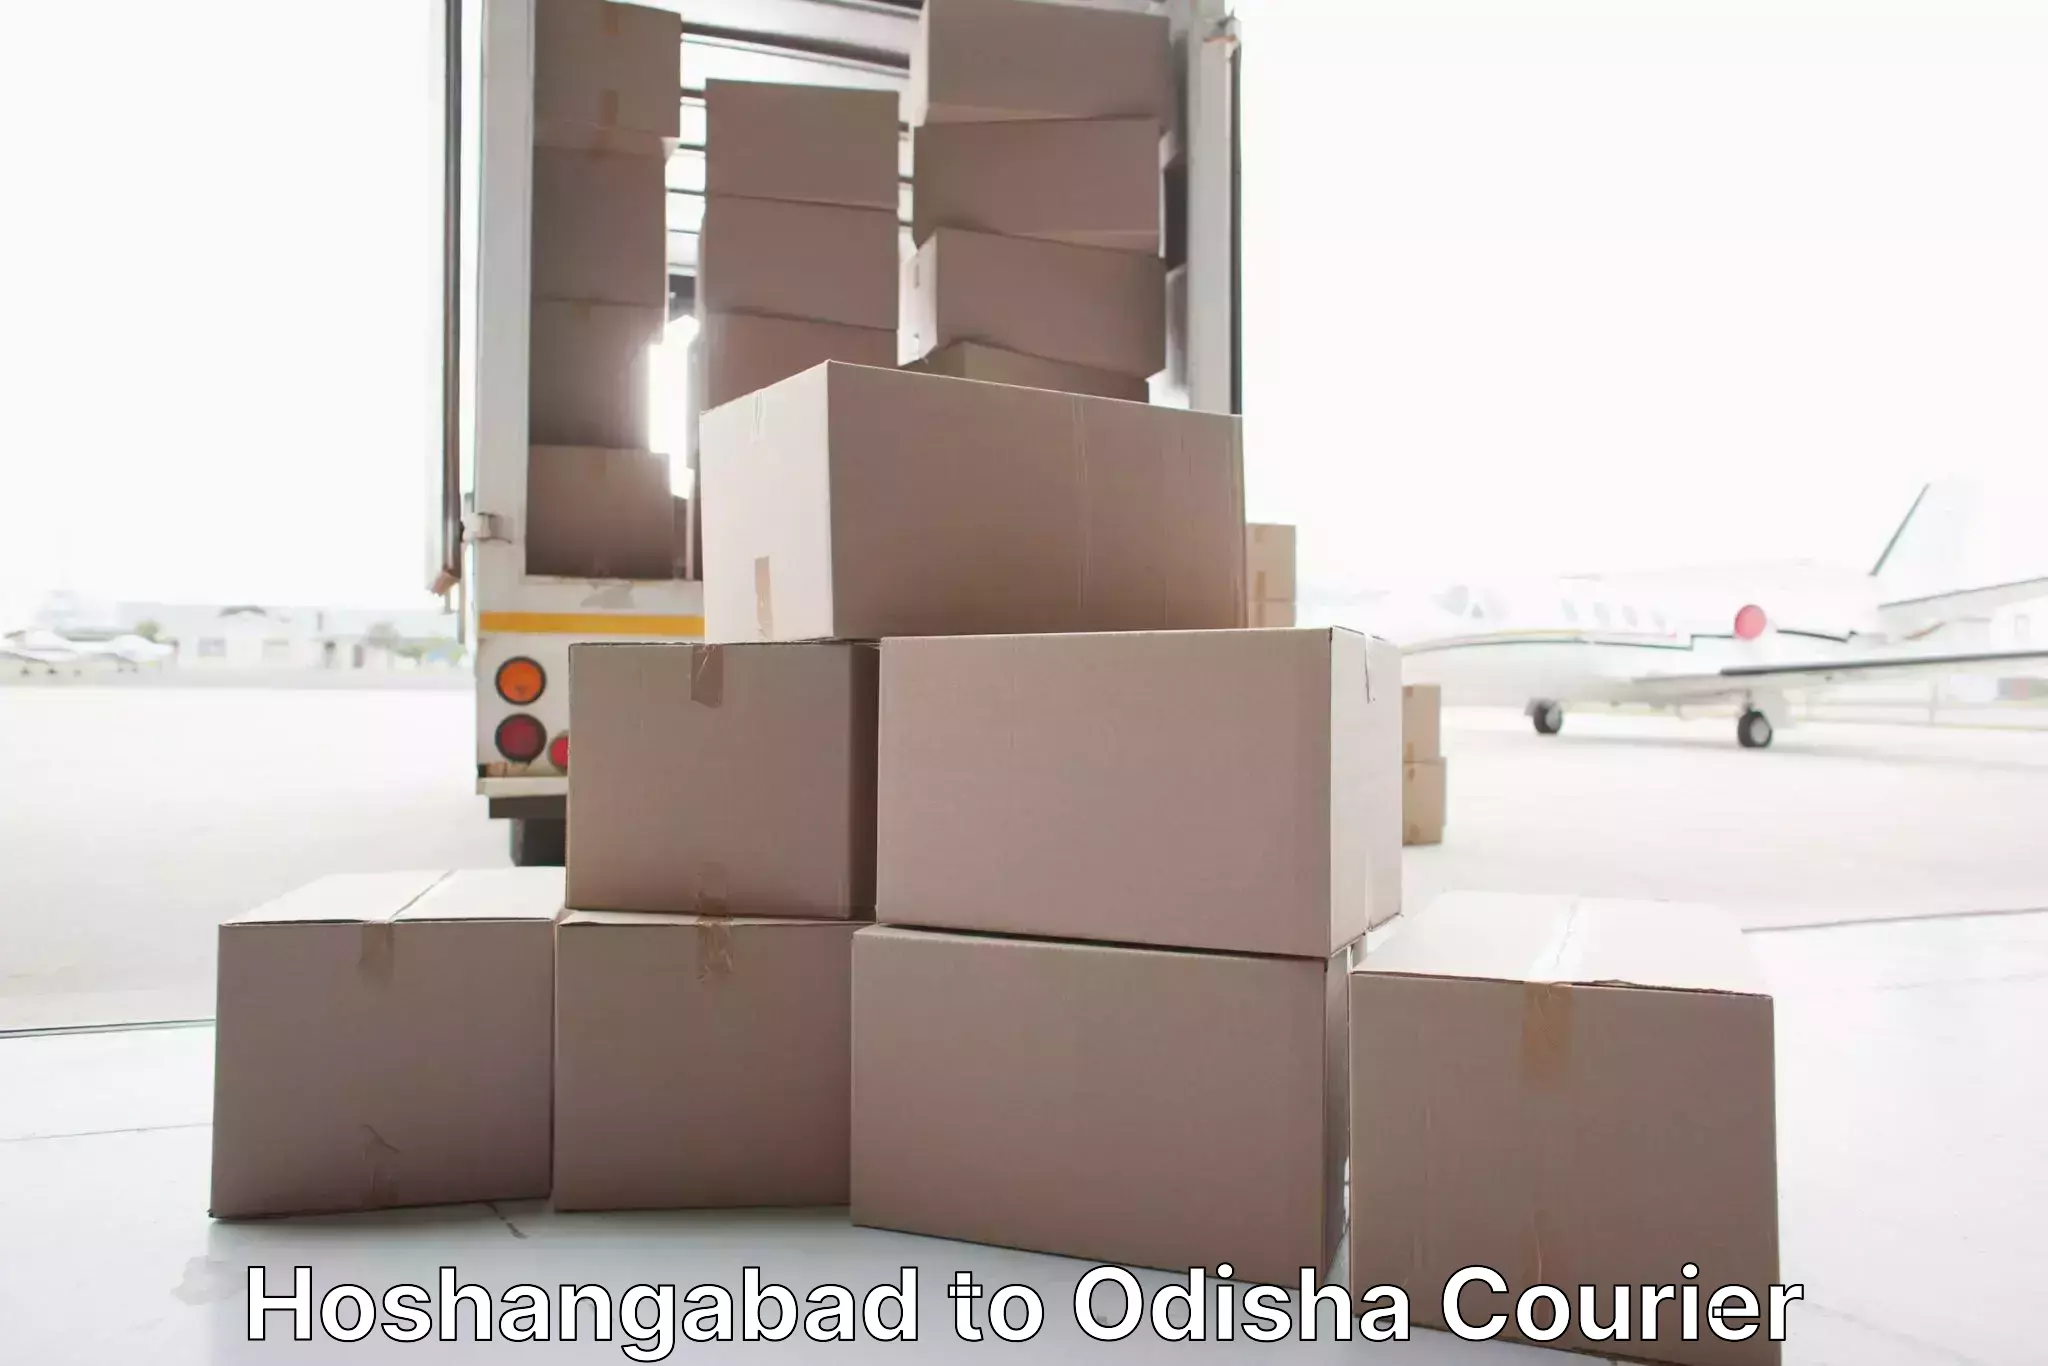 Furniture moving experts Hoshangabad to Ghuntagadia